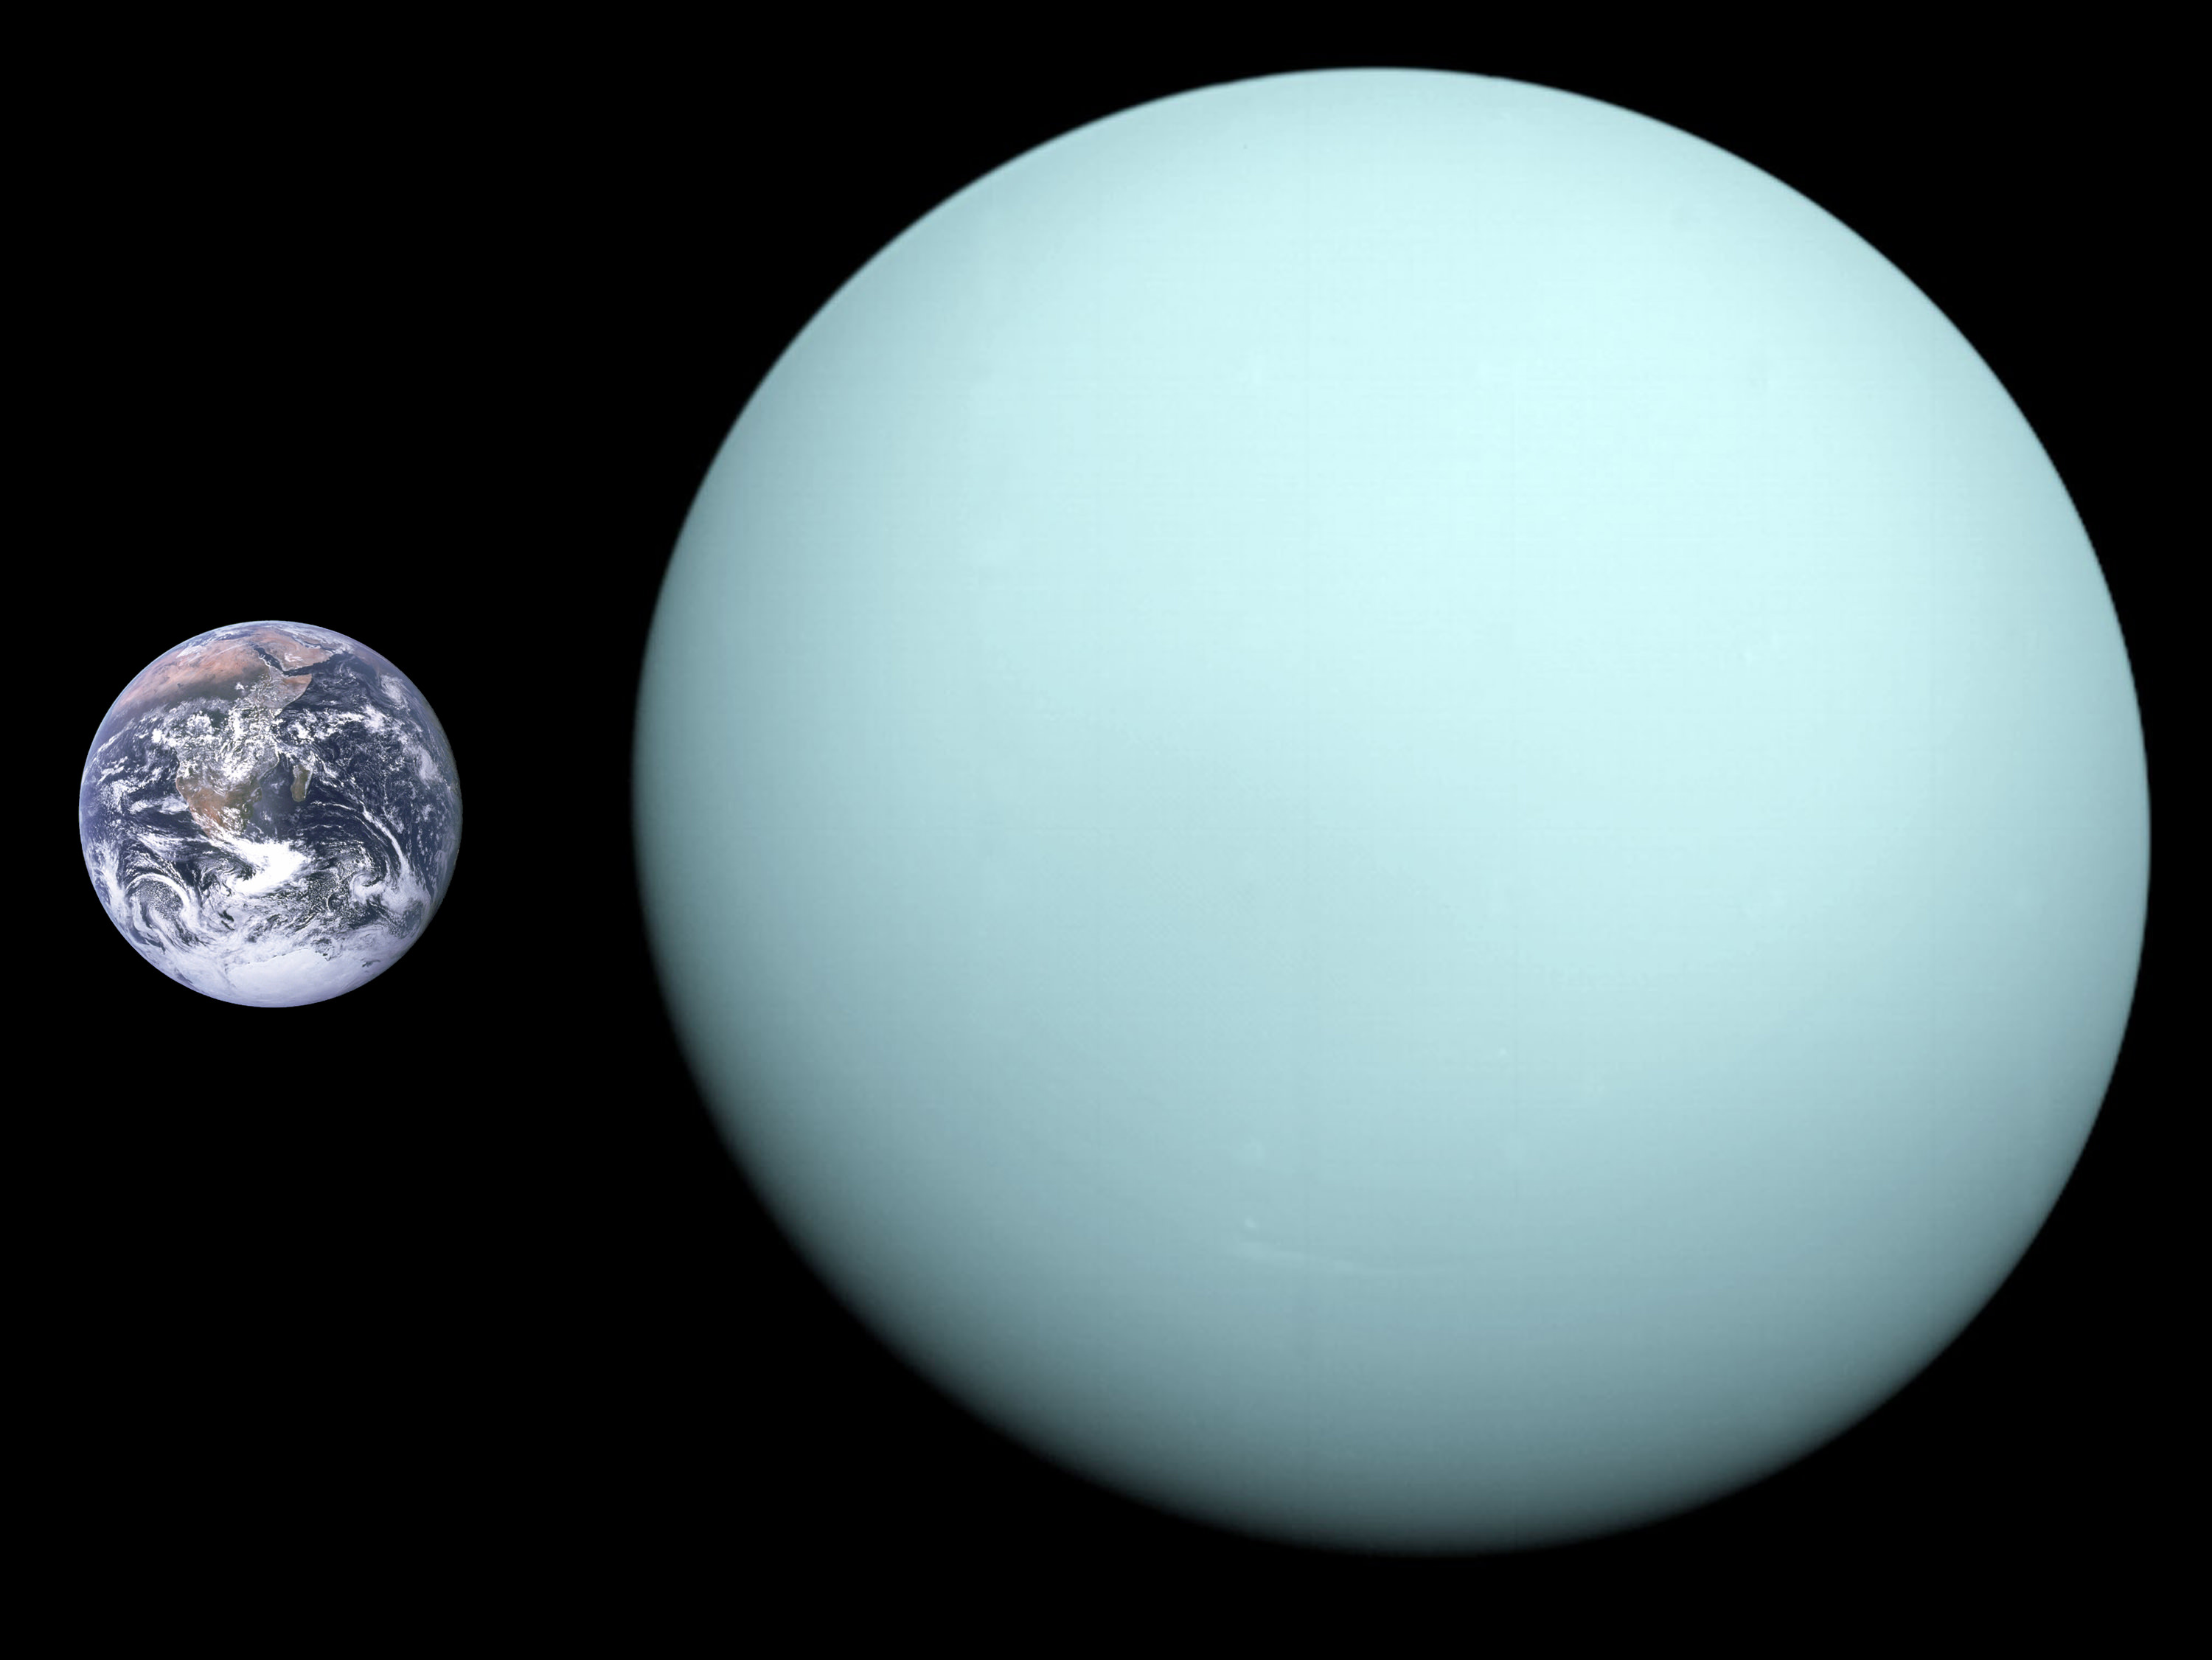 Pictures Of Uranus The Planet 25